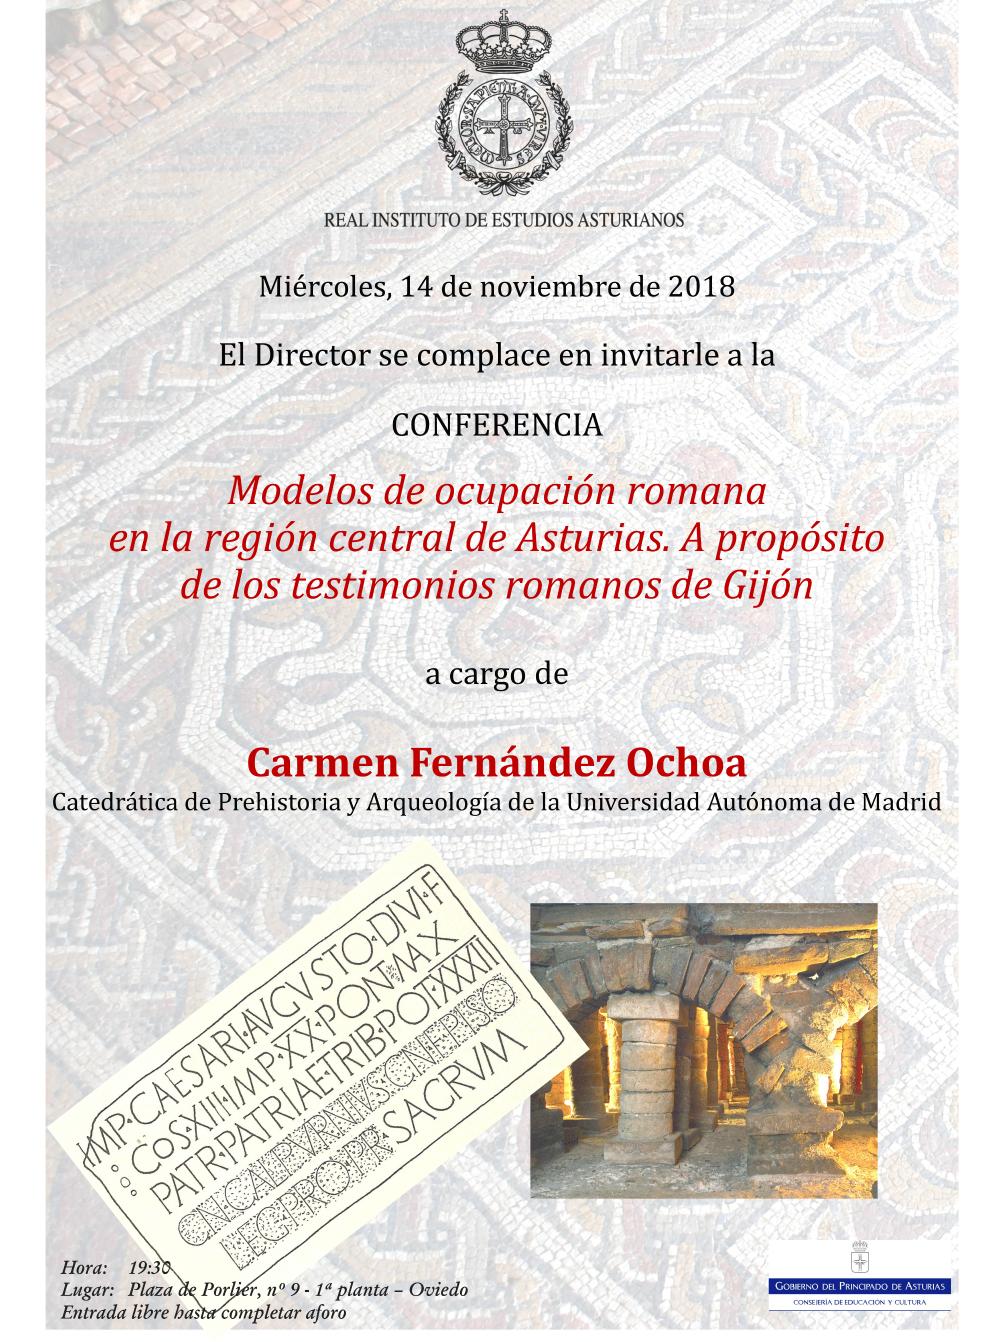 Imagen - Conferencia Modelos de ocupación romana en la región central de Asturias. A propósito de los testimonios romanos de Gijón